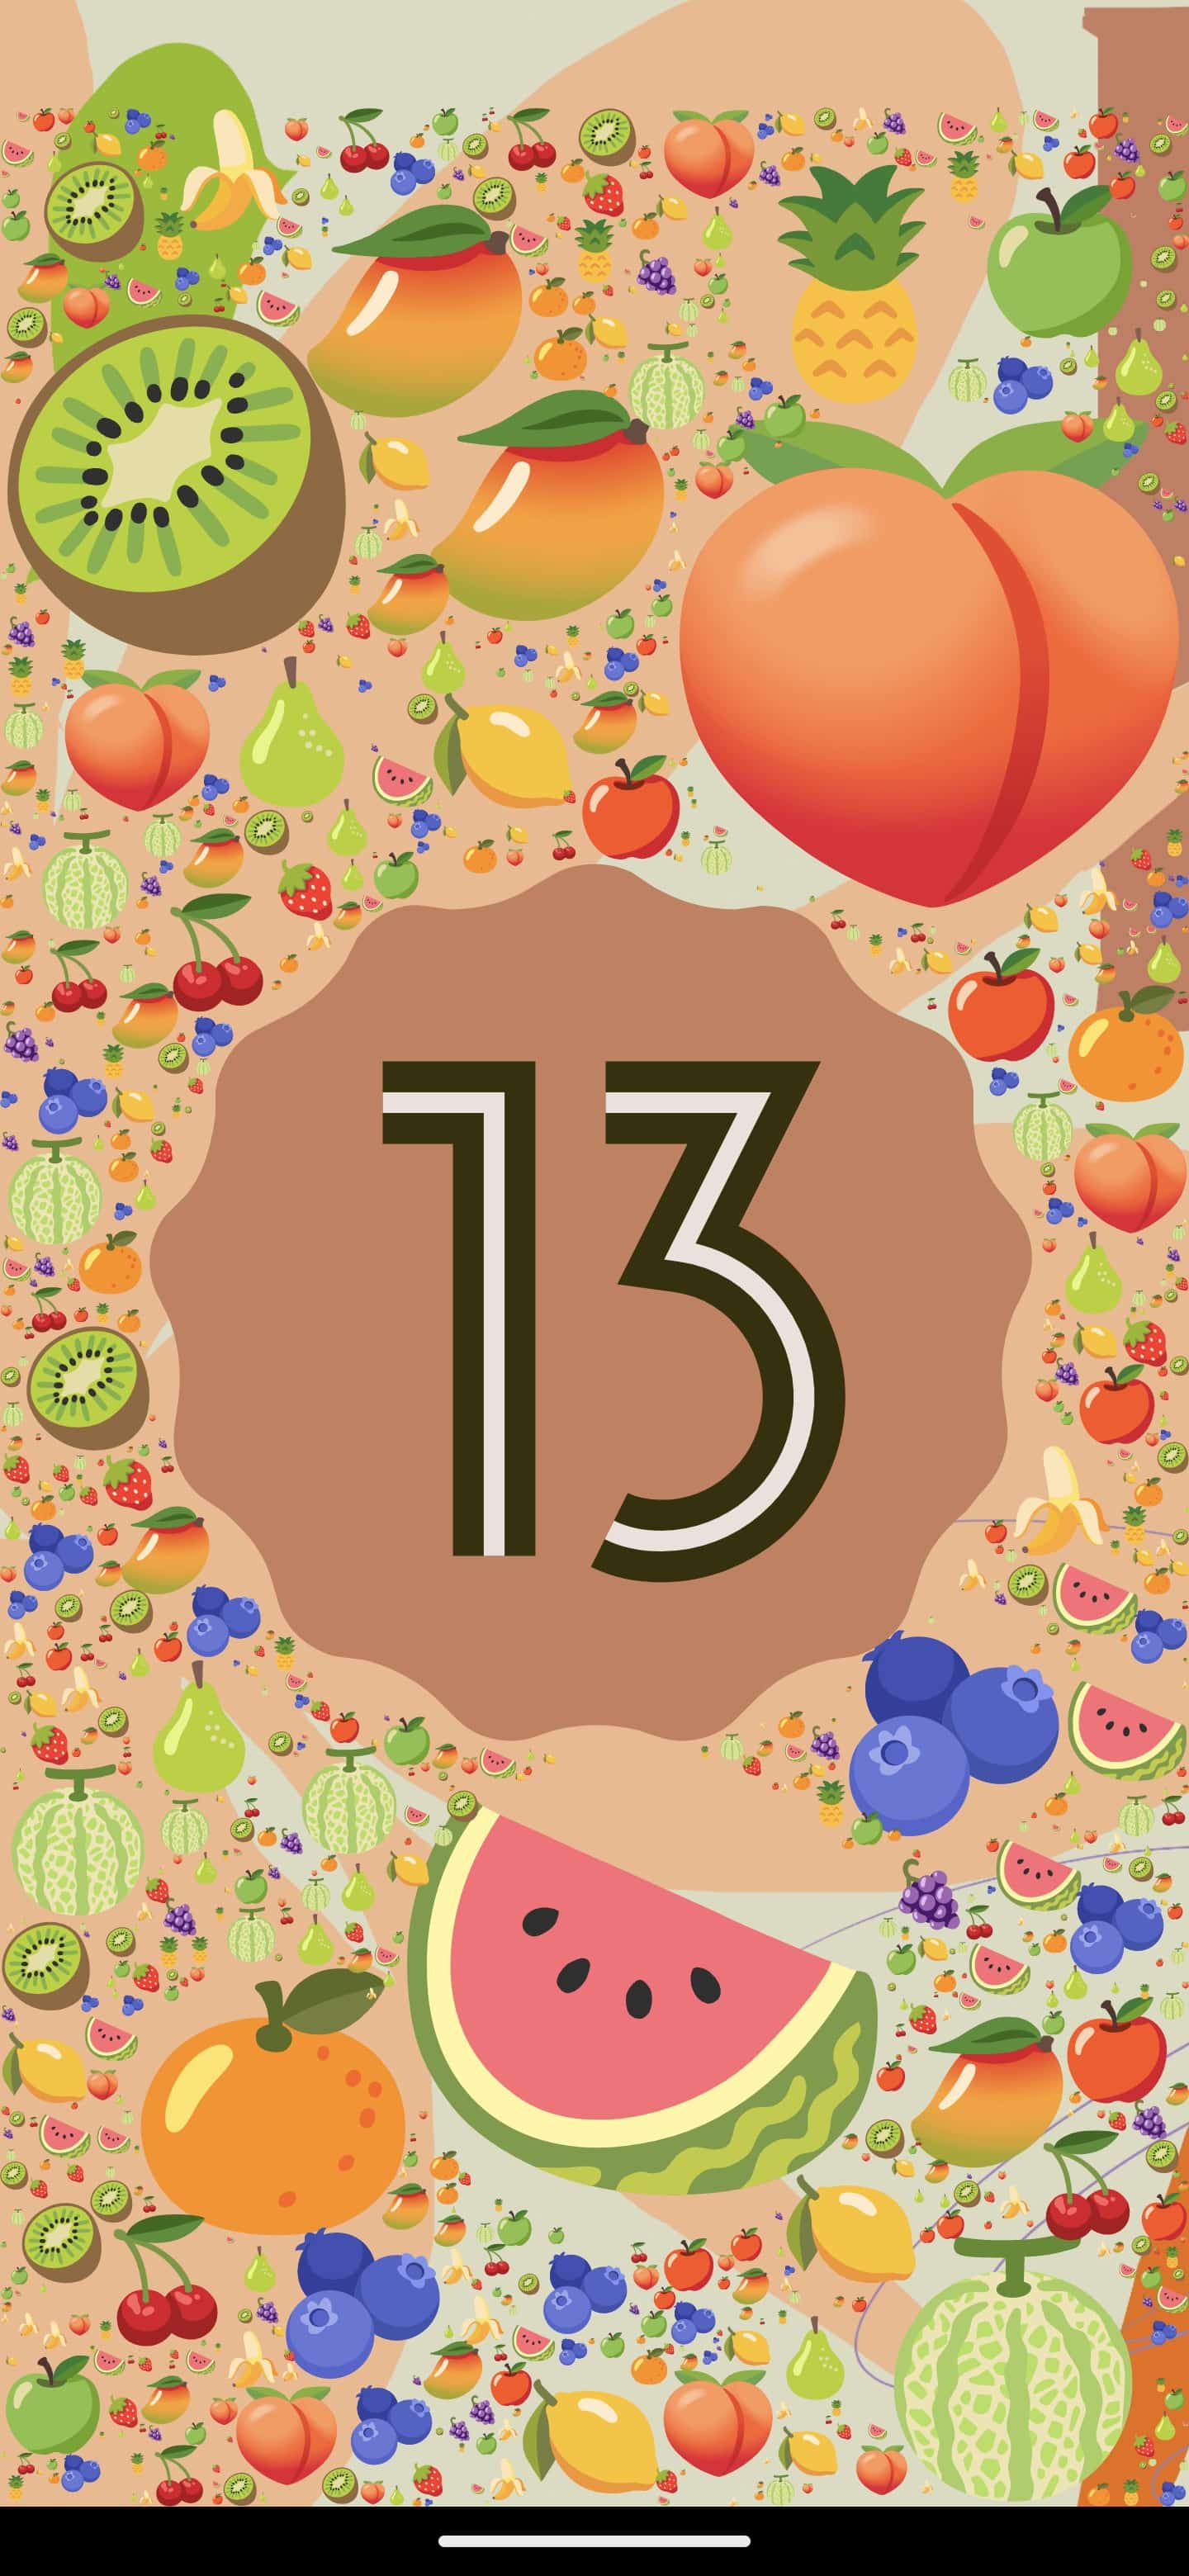 Android 13 sürpriz yumurtası tam bir emoji şenliği